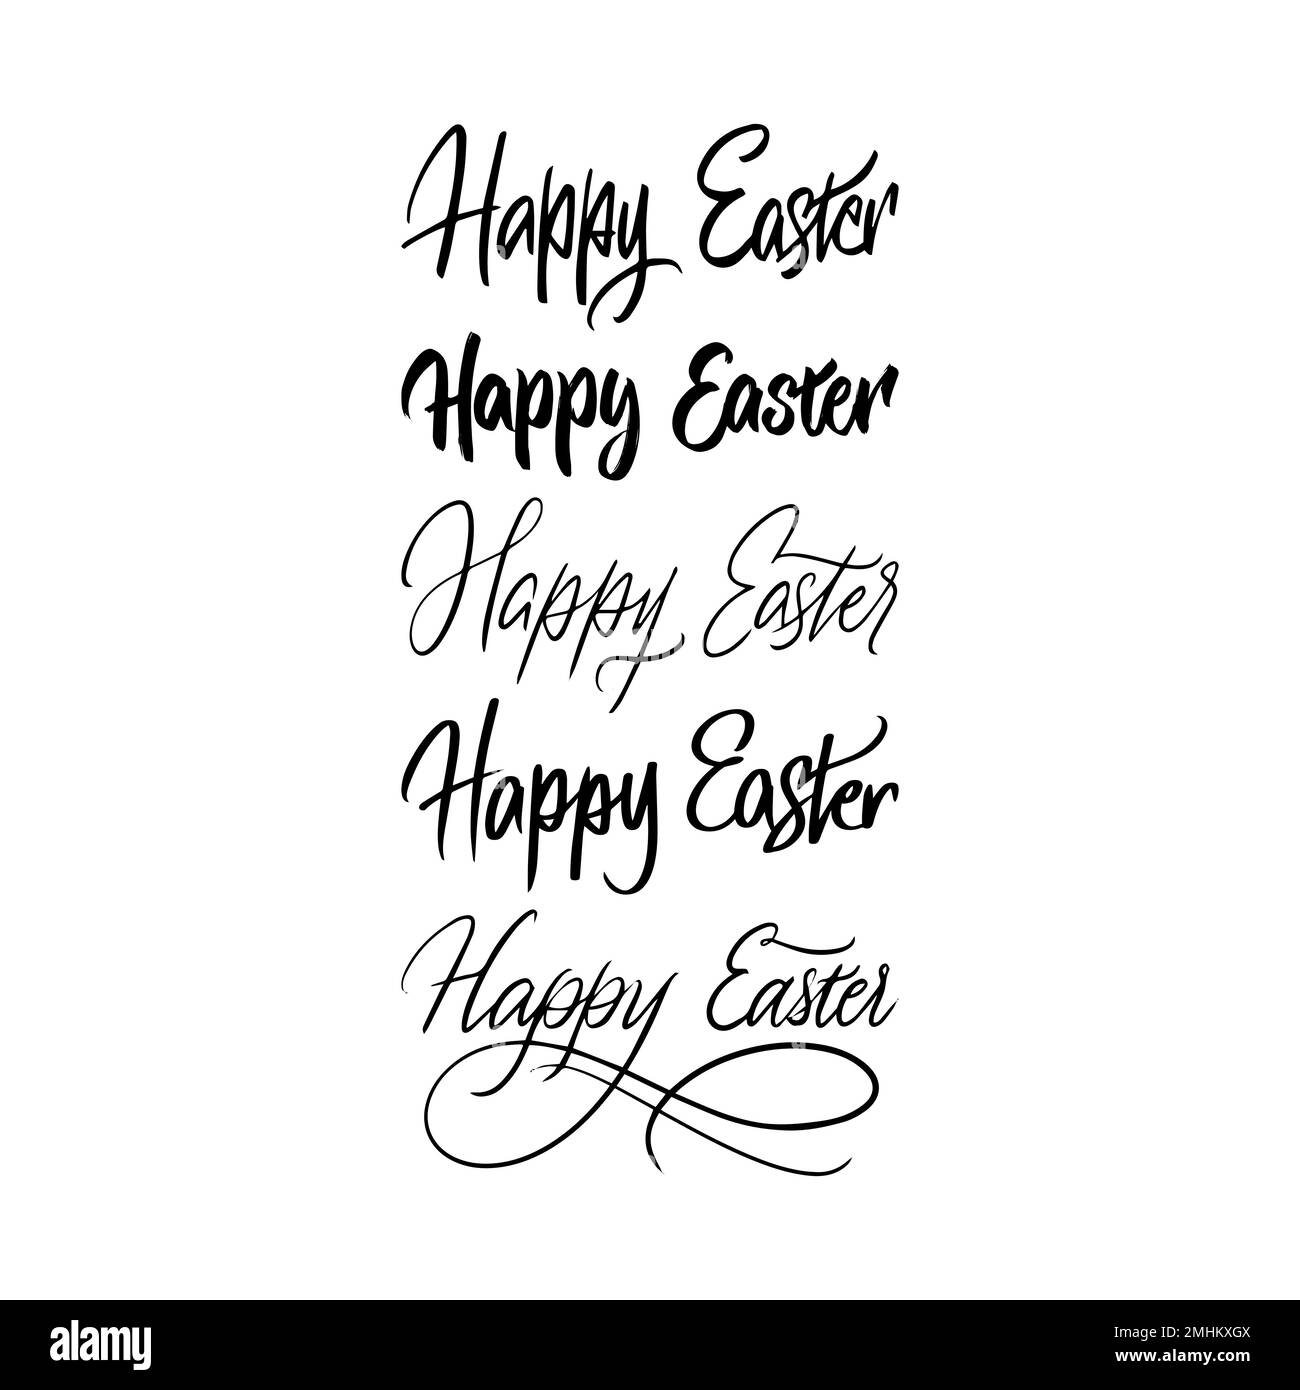 Happy Easter Handwritten Lettering Set Stock Vector